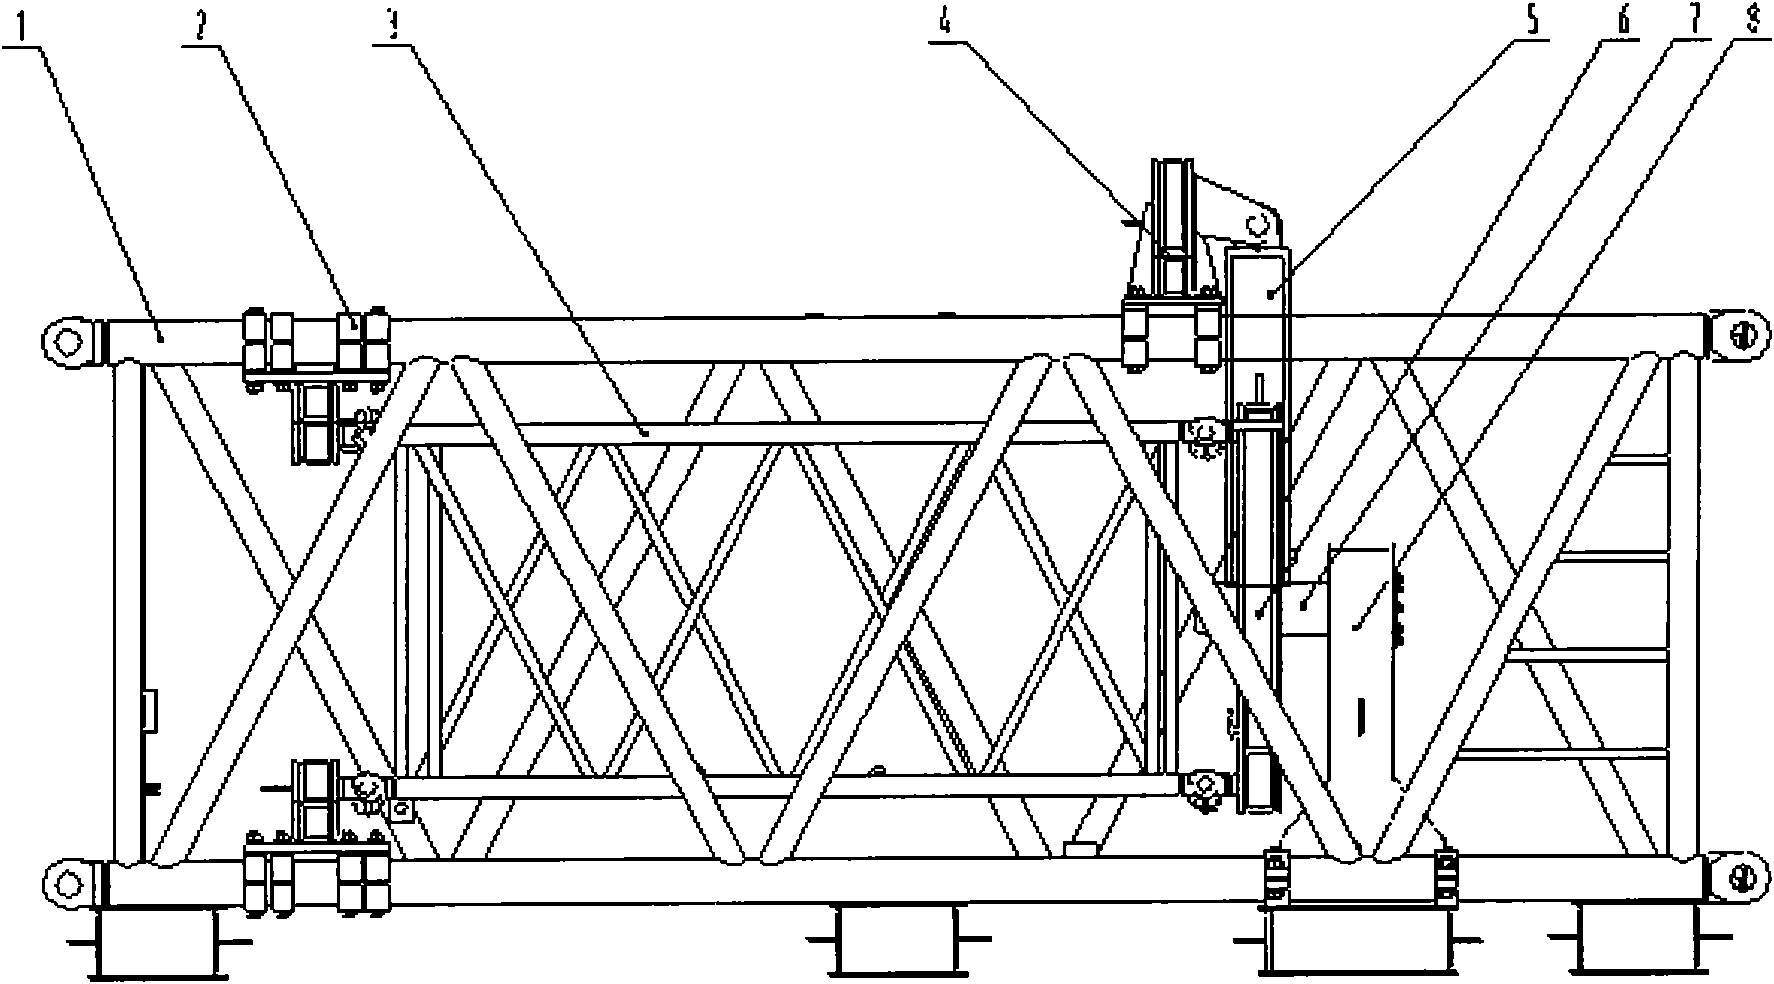 Cantilever crane torsion test device